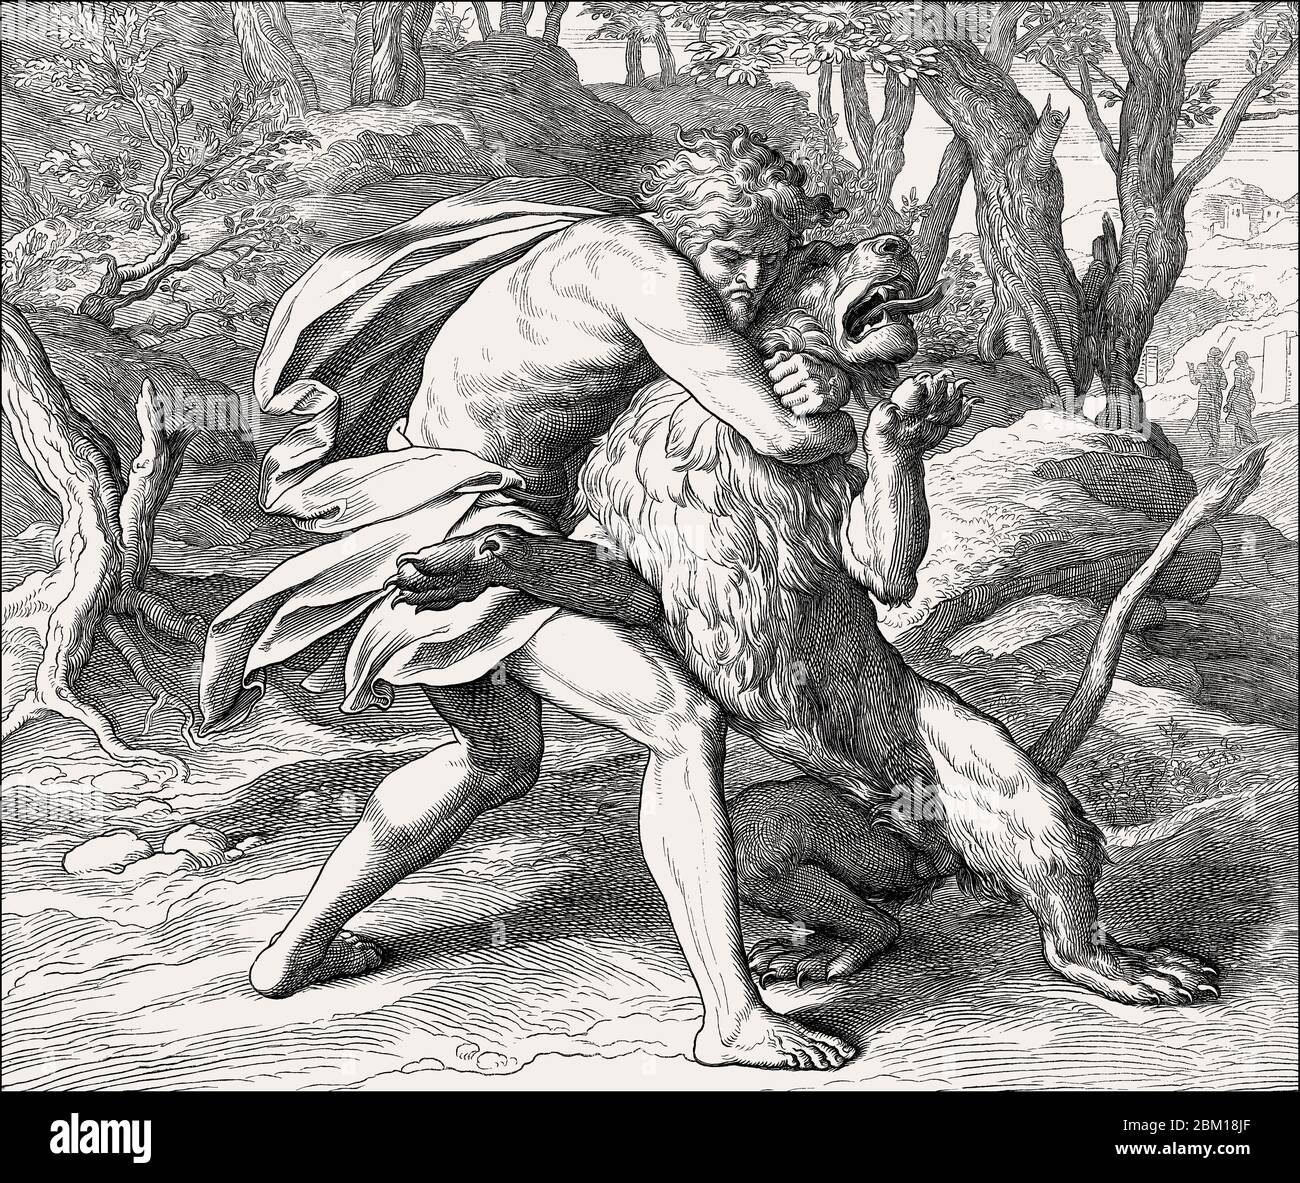 Samson Slaying the Lion, Old Testament, by Julius Schnorr von